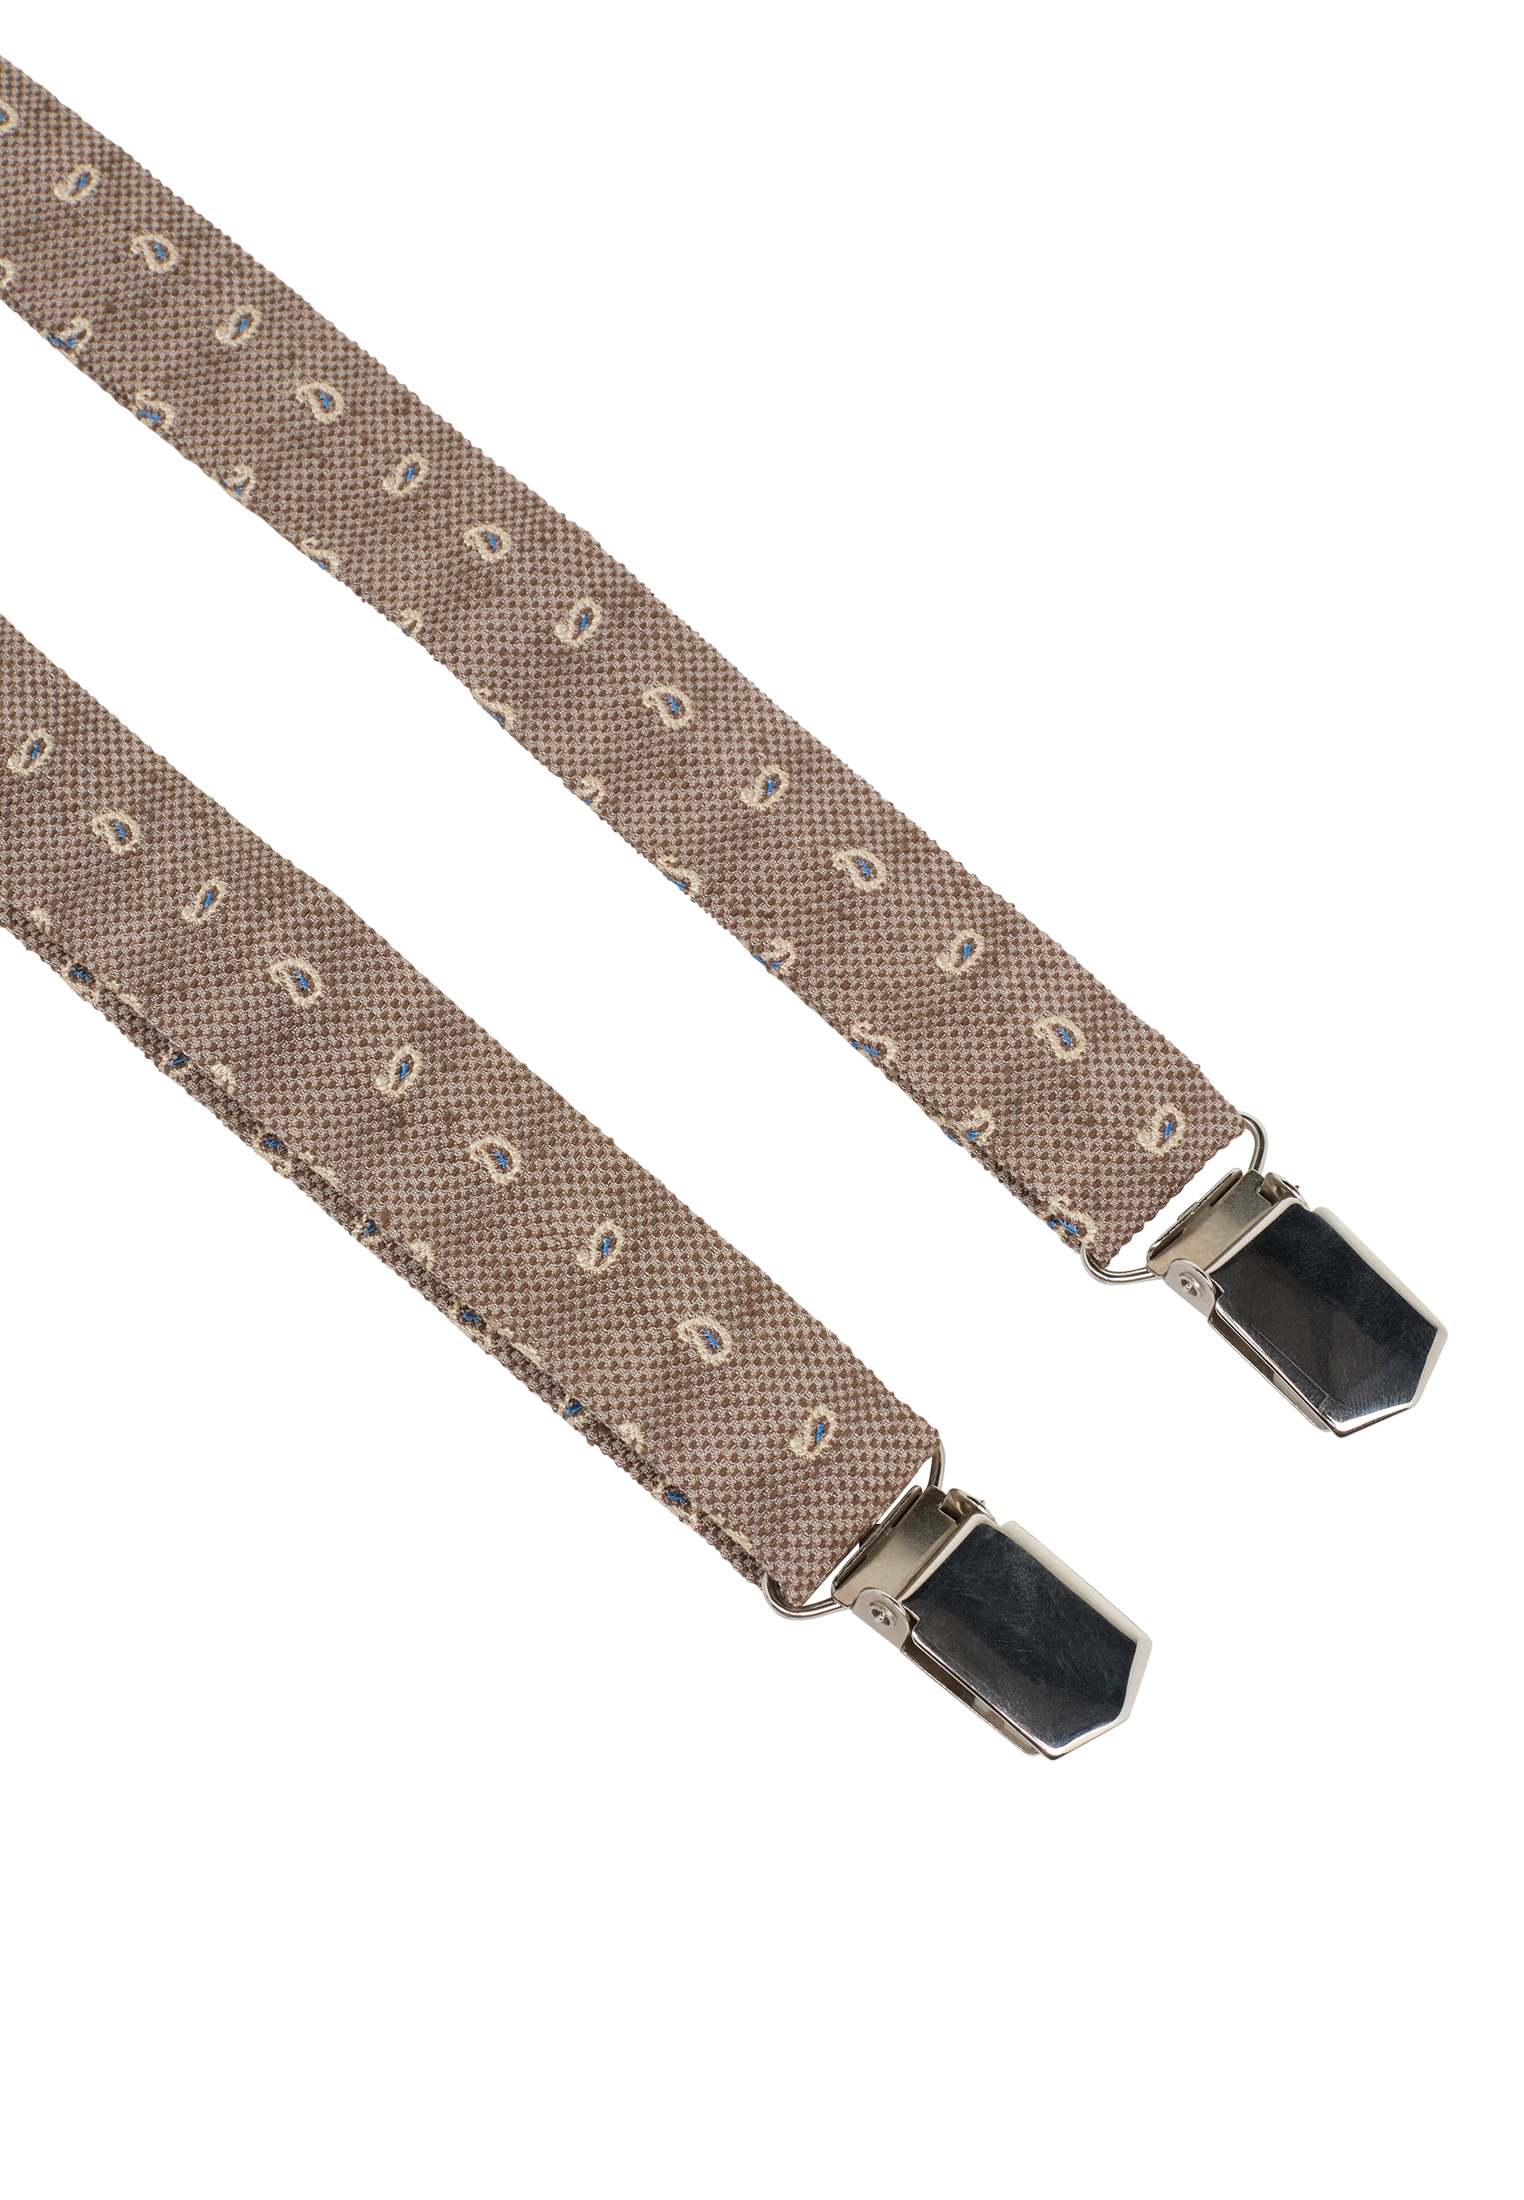 Braces in beige patterned